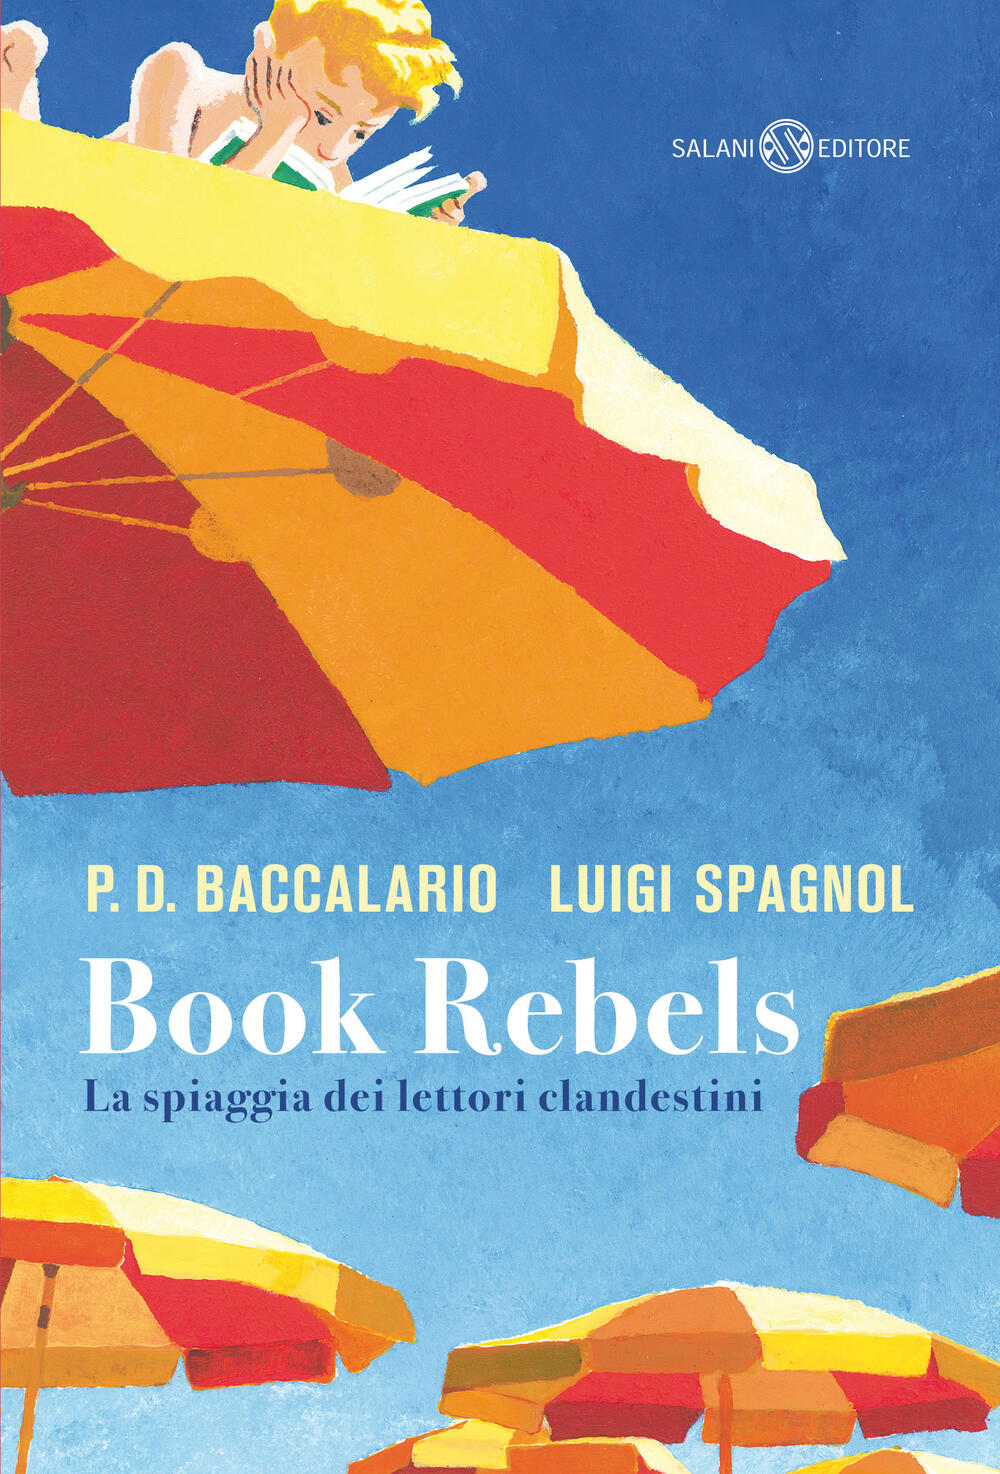 Book Rebels" di Luigi Spagnol - Brossura - FUORI COLLANA SALANI - Il Libraio